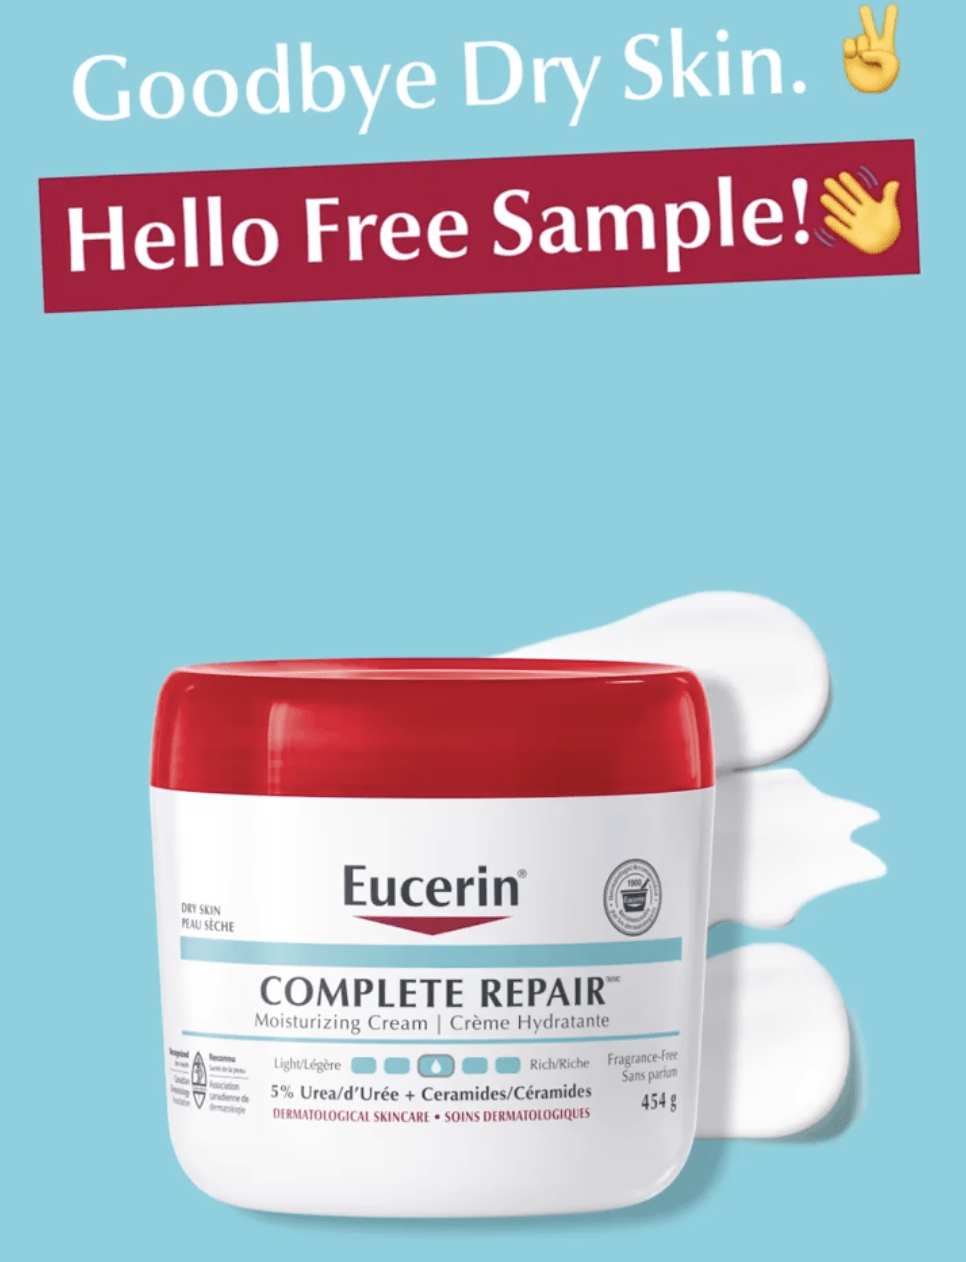 Eucerin Canada Free Samples